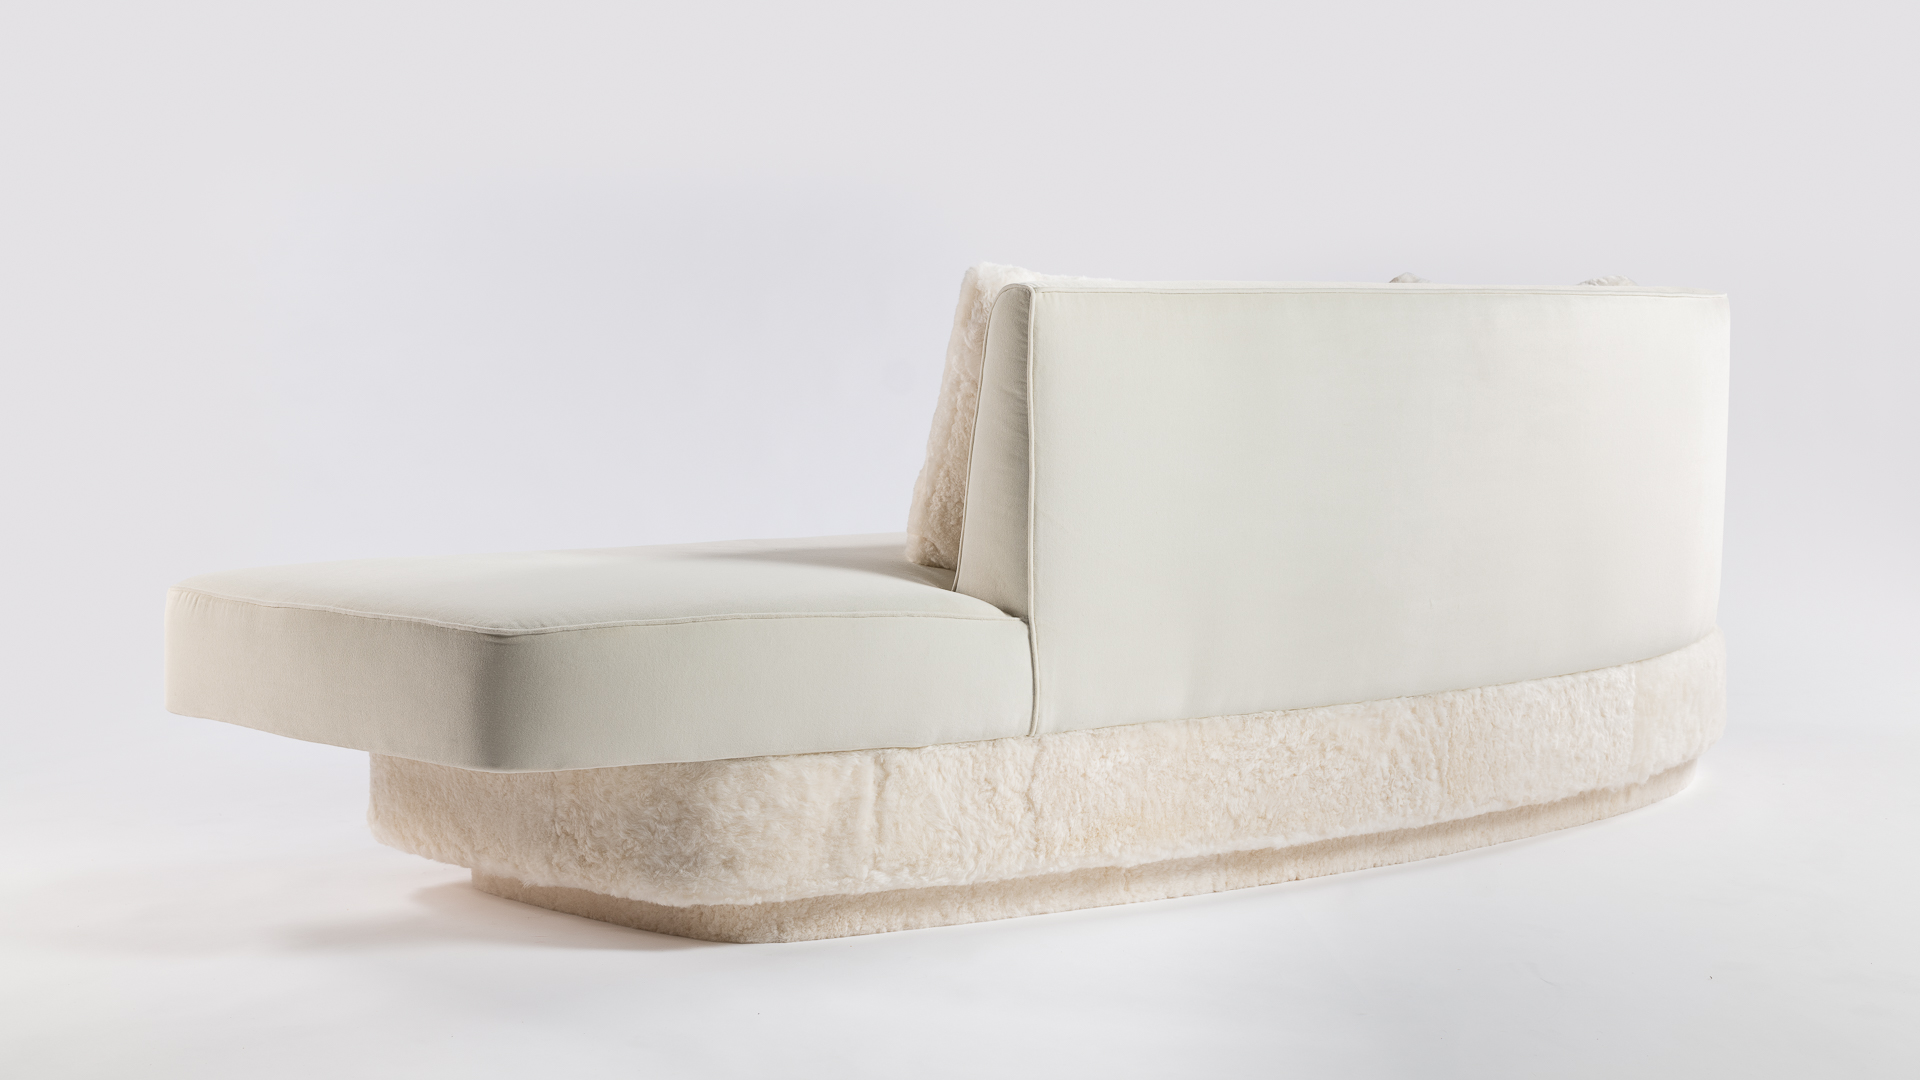 Dossier arrondi, ligne épurée pour ce canapé blanc en velours et agneau. Une pièce d'exception pour une décoration d'intérieur recherchée